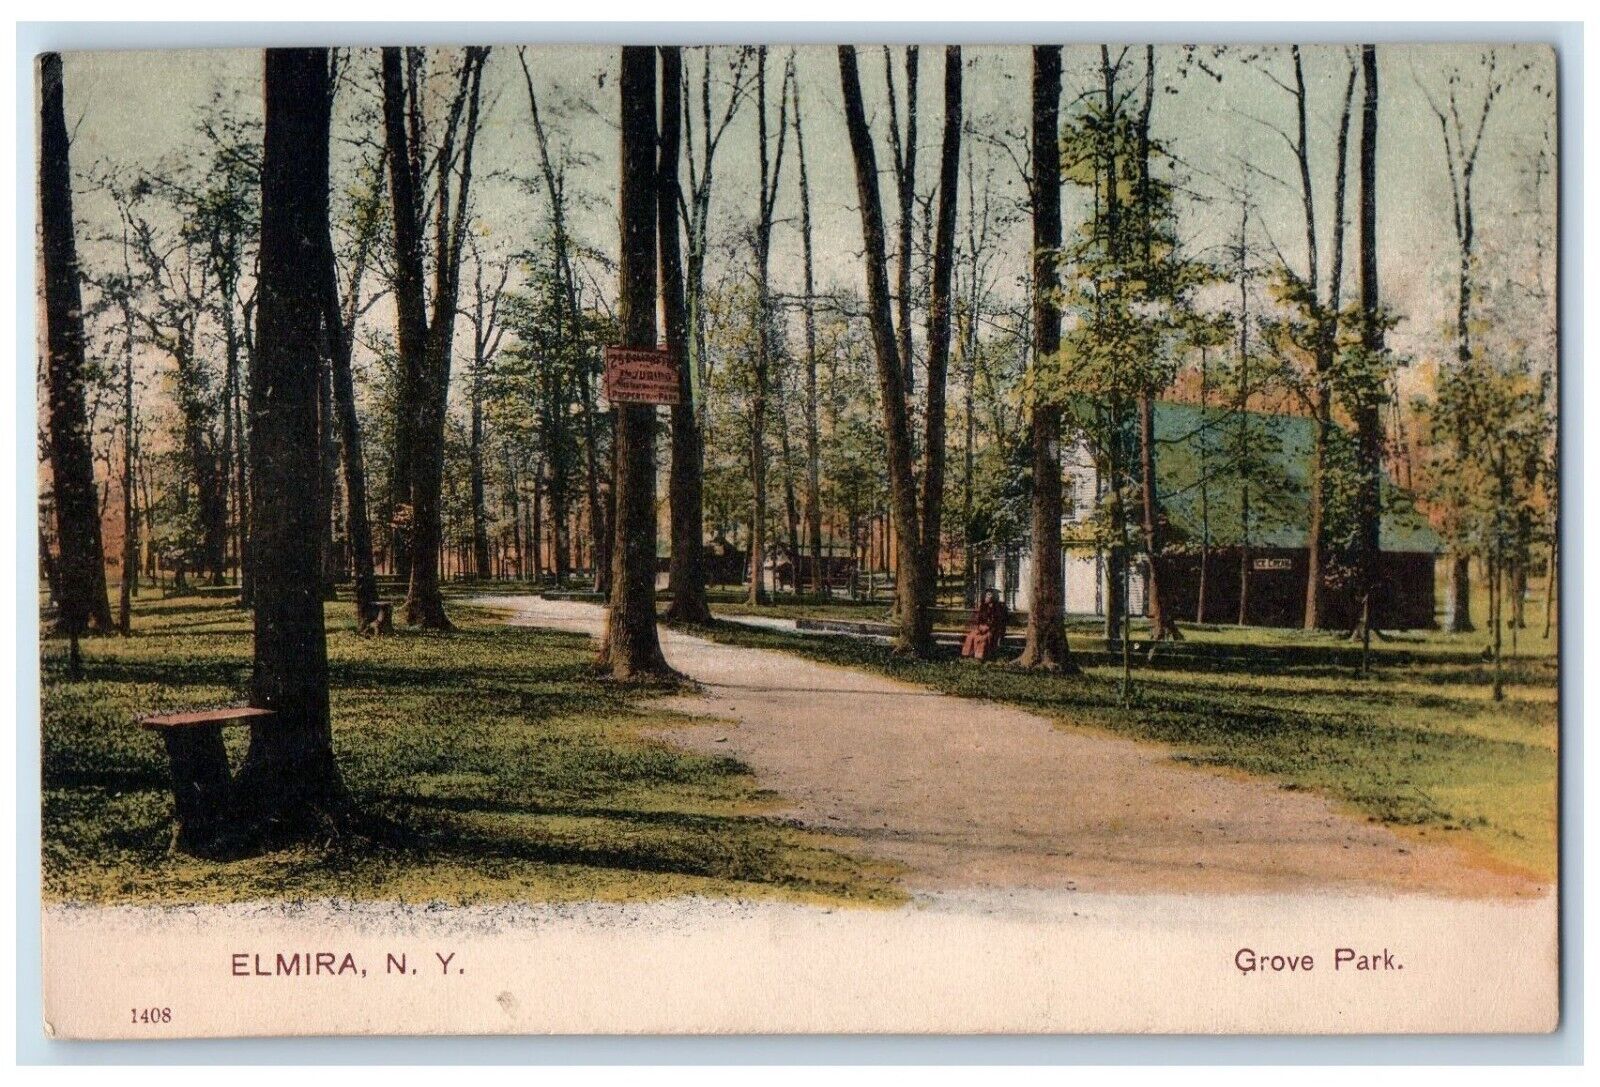 c1905 Grove Park Trees Pathway Shop Elmira New York PCK Vintage Antique Postcard